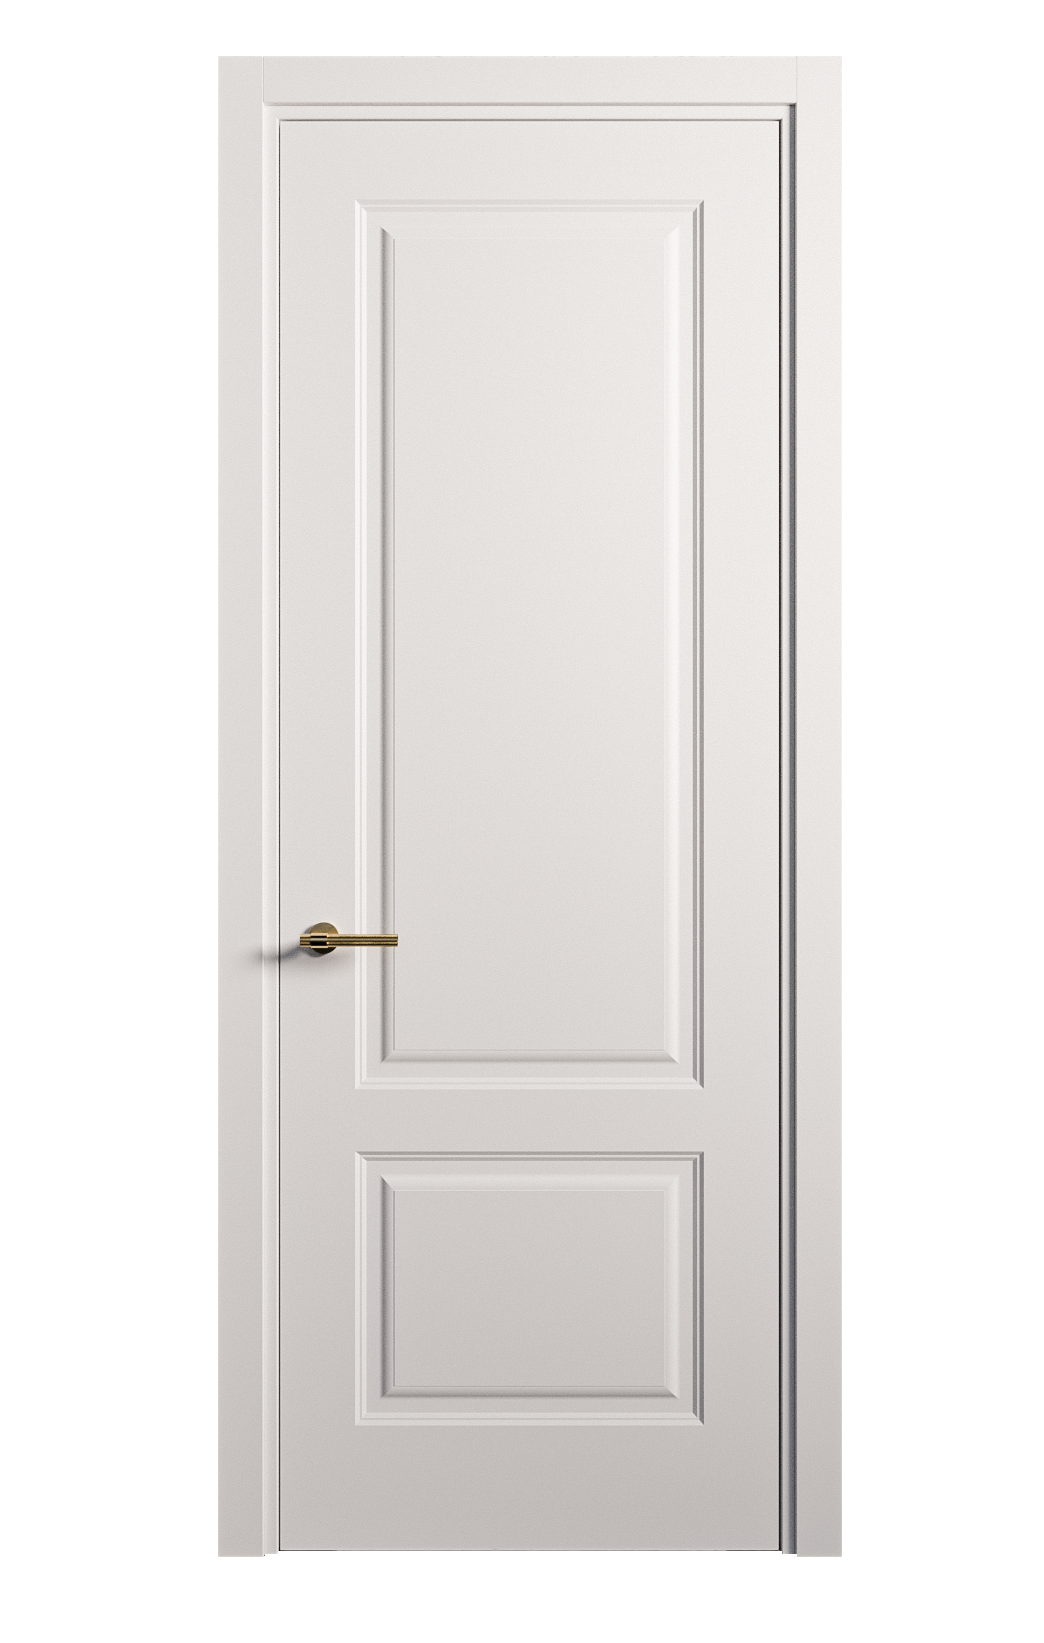 Межкомнатная дверь Вита-1 глухая эмаль ral 9003 26277